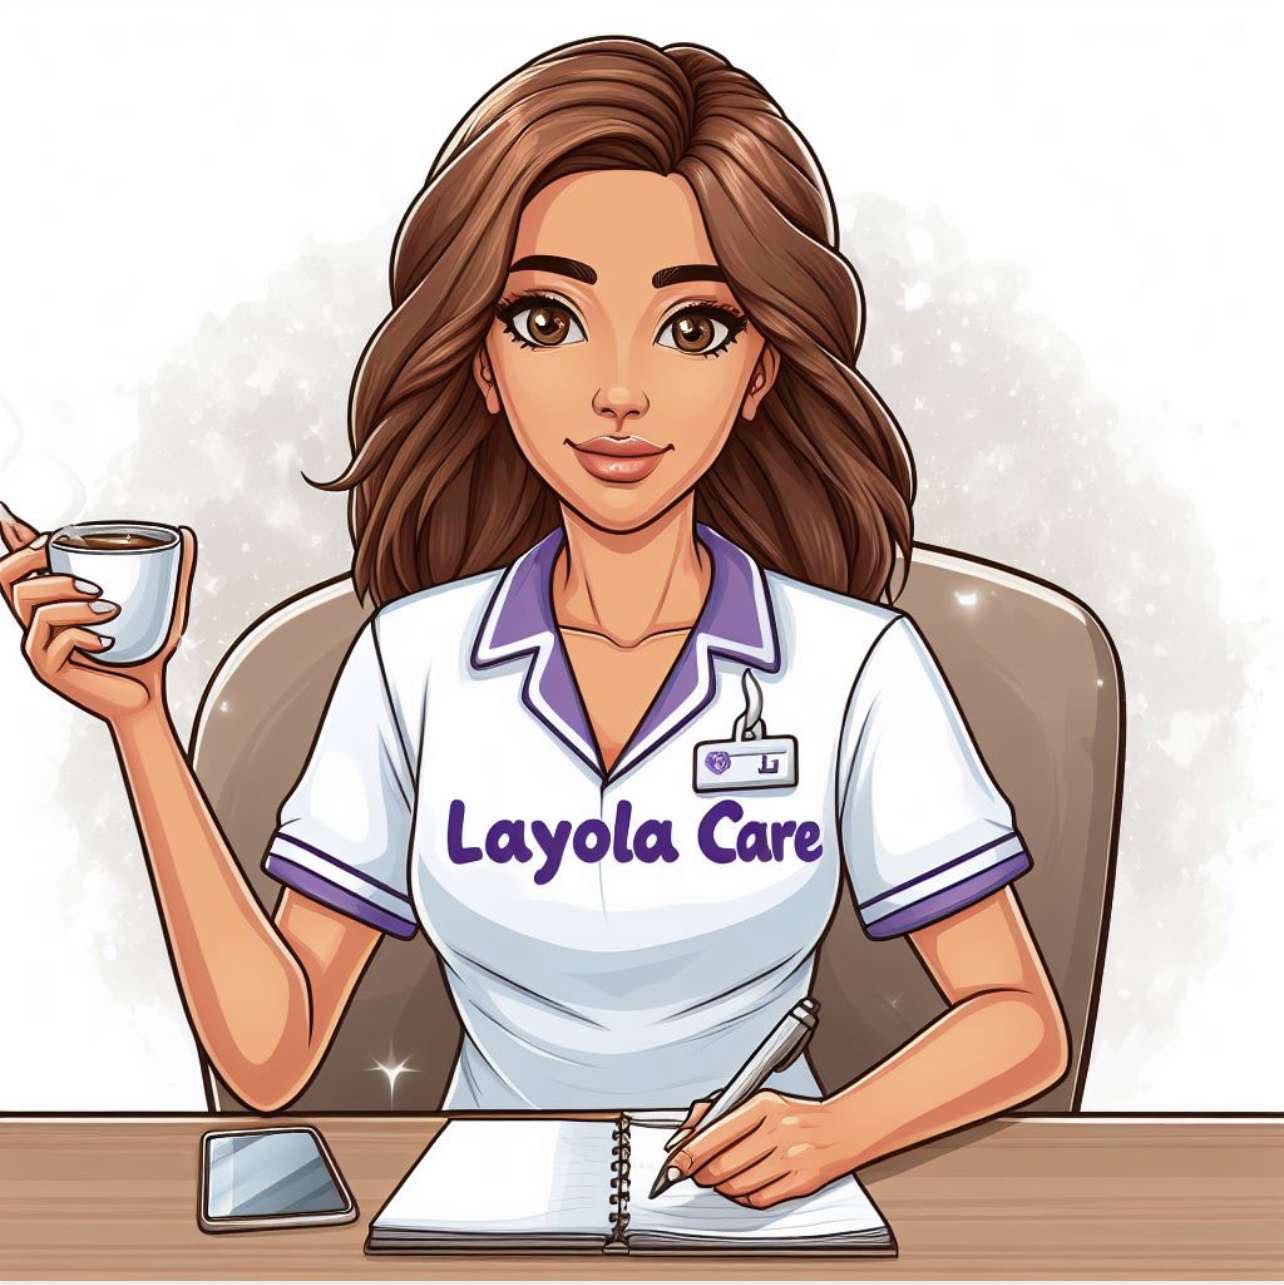 Layola Care